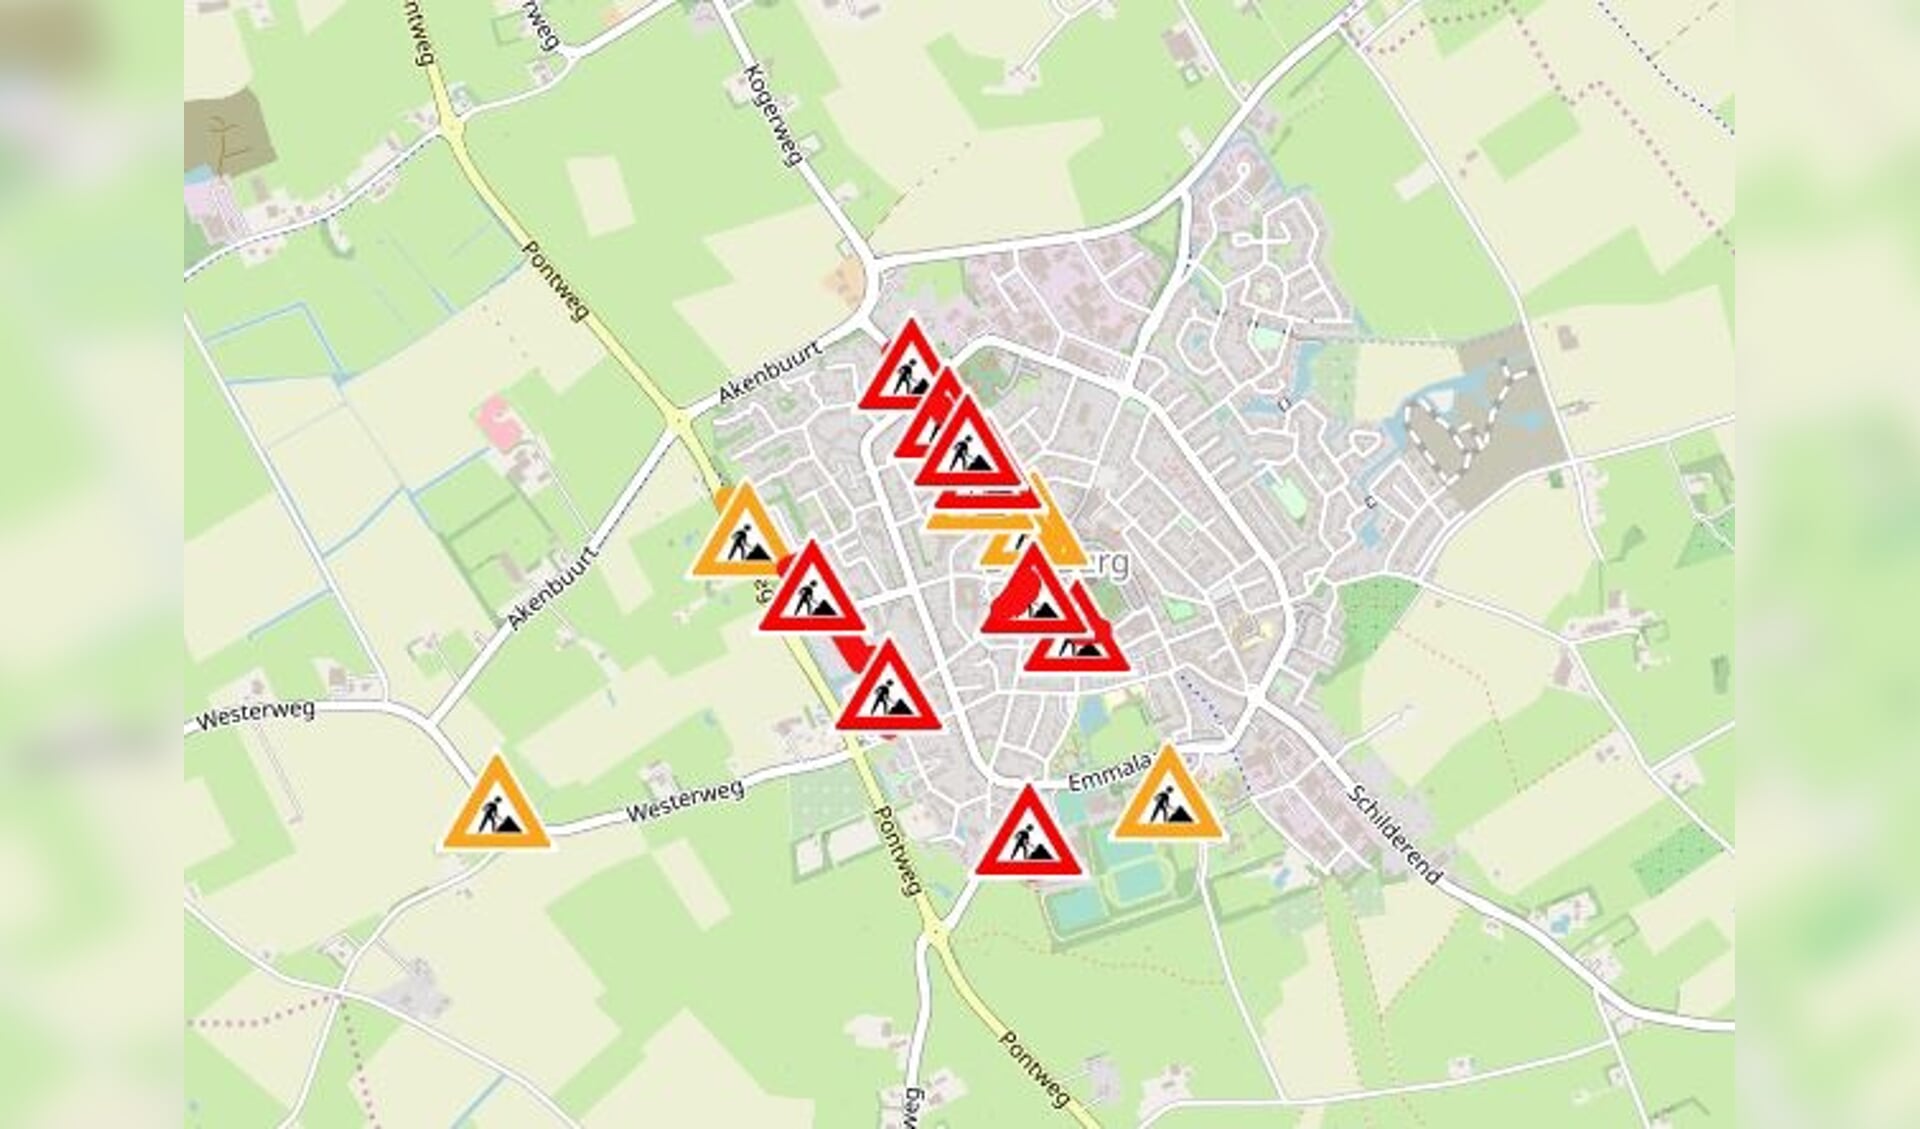 Kaartje op de website van de gemeente met een overzicht van de wegwerkzaamheden in Den Burg.